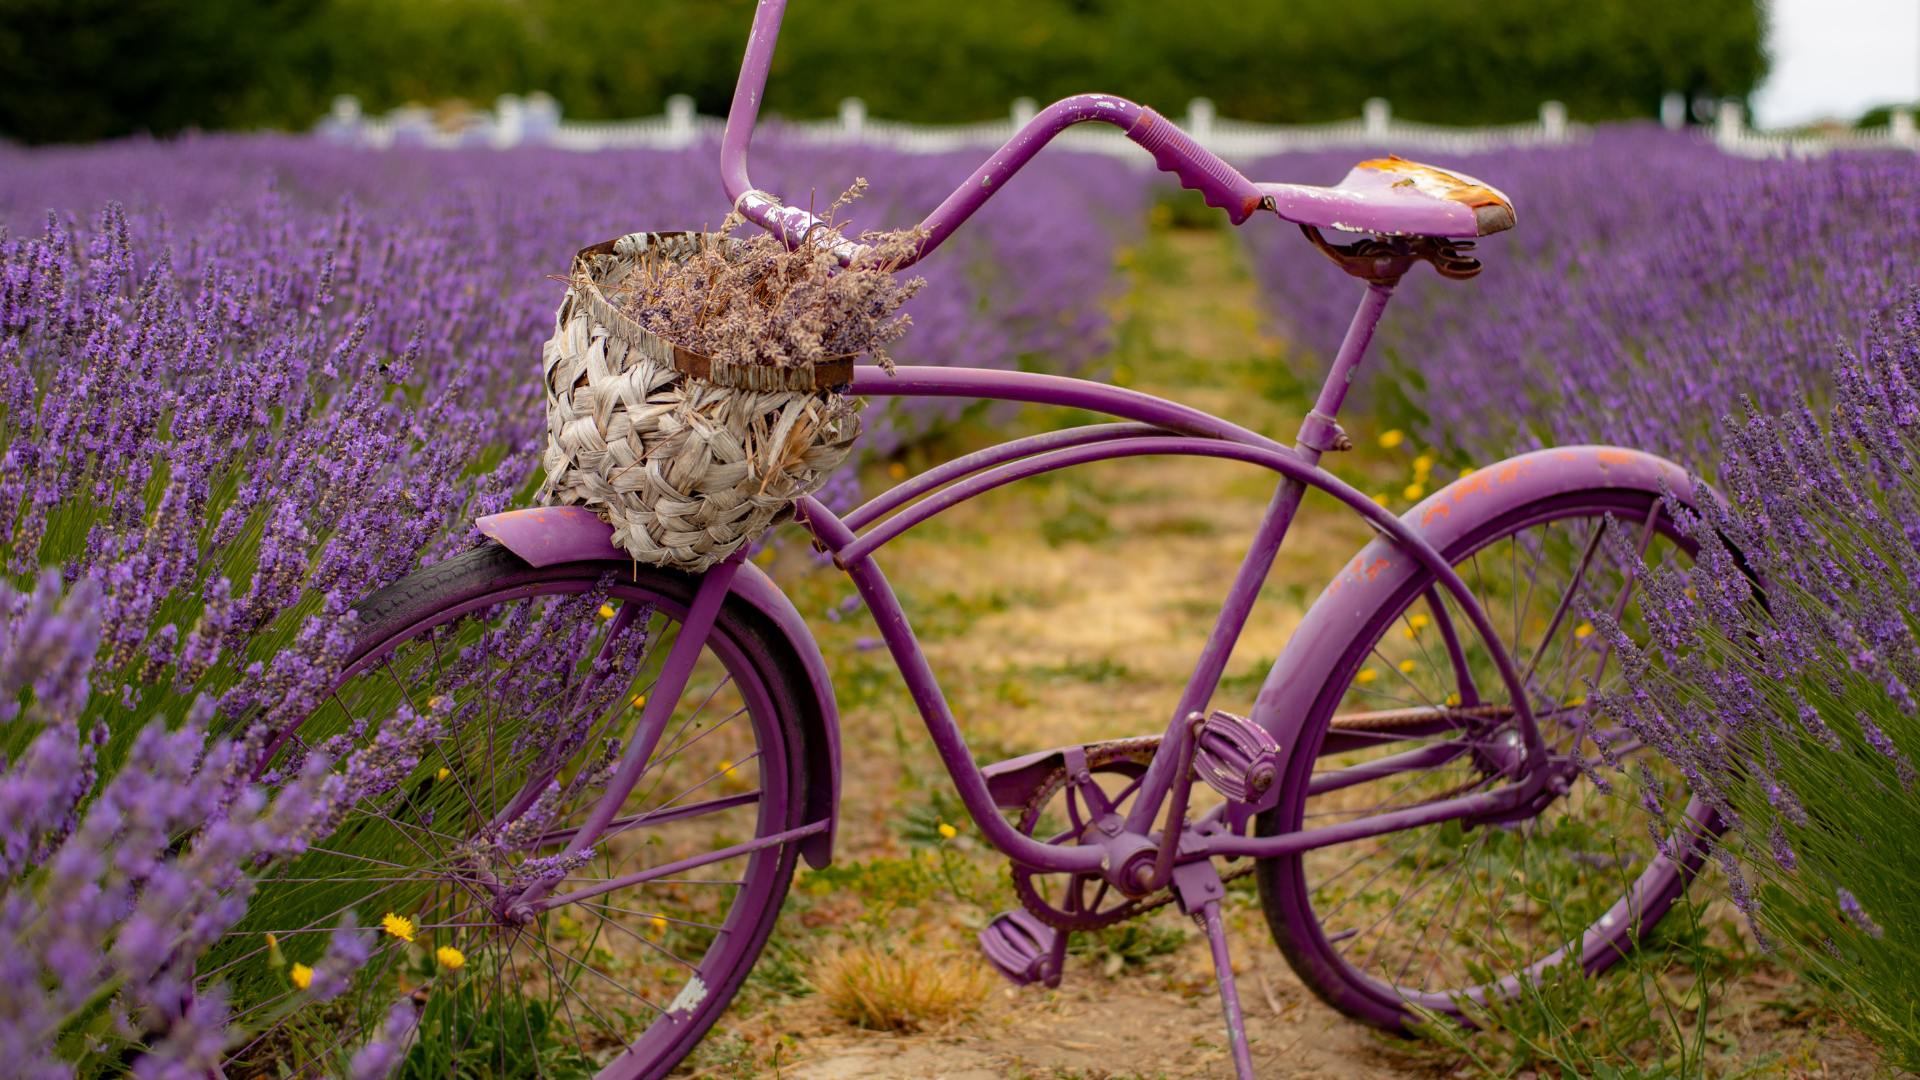 Sonhar com Bicicleta Roxa: Qual é o Significado?